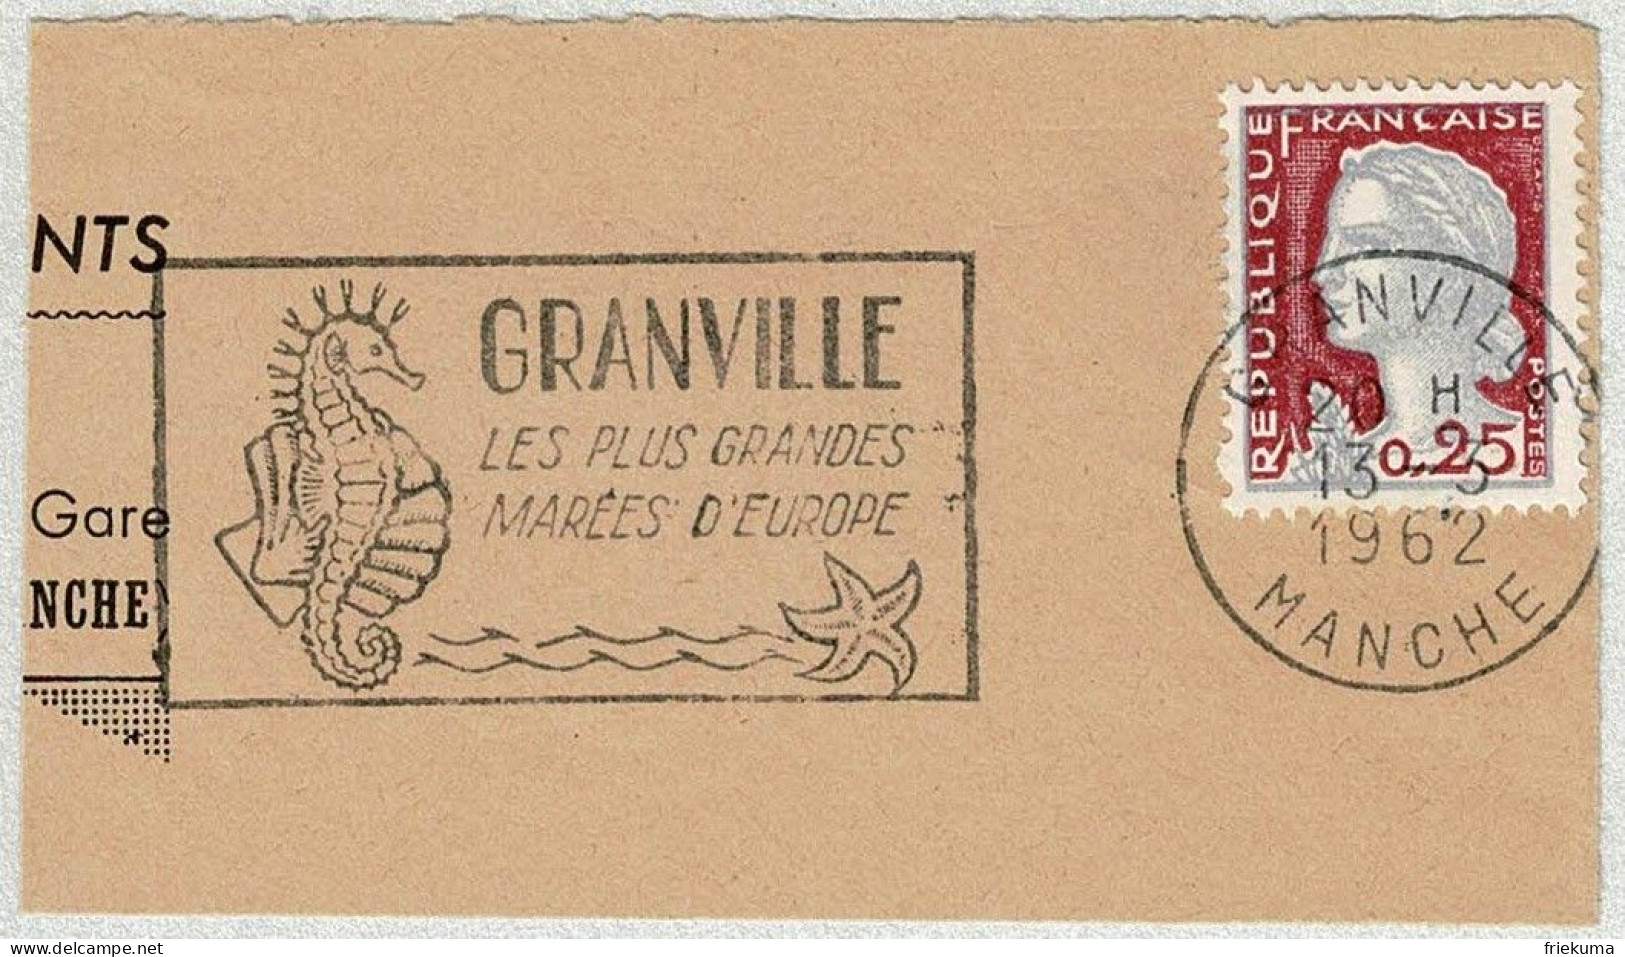 Frankreich / France 1962, Flaggenstempel Granville, Seepferdchen / Hippocampus, Seestern / Asteroidea, Gezeiten - Mundo Aquatico